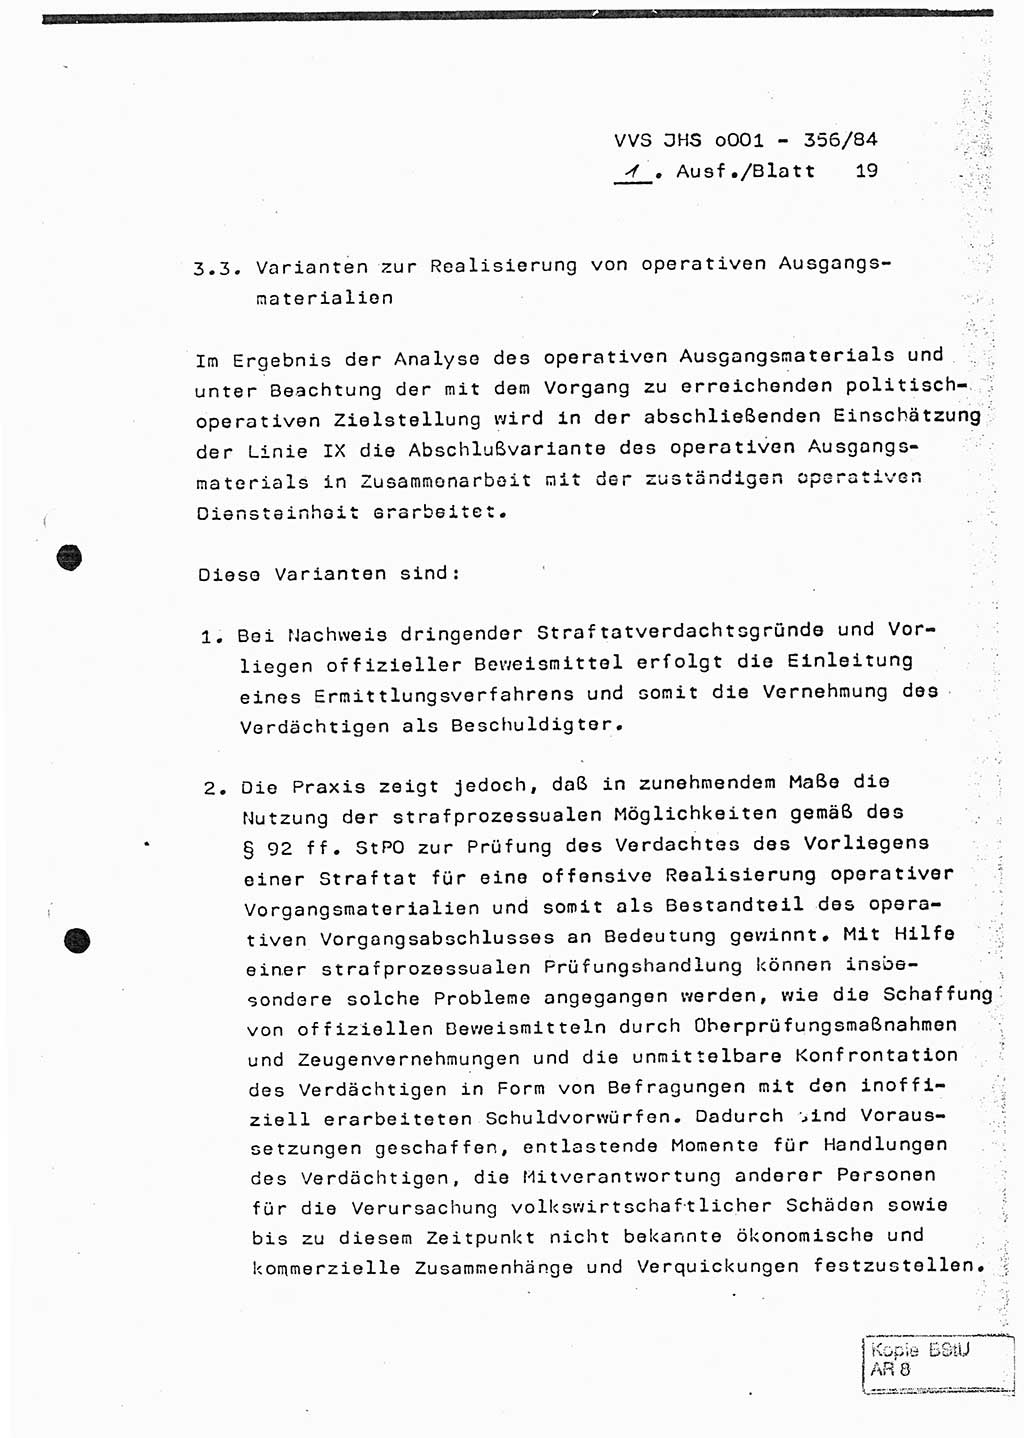 Diplomarbeit, Major Lutz Rahaus (HA Ⅸ/3), Ministerium für Staatssicherheit (MfS) [Deutsche Demokratische Republik (DDR)], Juristische Hochschule (JHS), Vertrauliche Verschlußsache (VVS) o001-356/84, Potsdam 1984, Seite 19 (Dipl.-Arb. MfS DDR JHS VVS o001-356/84 1984, S. 19)